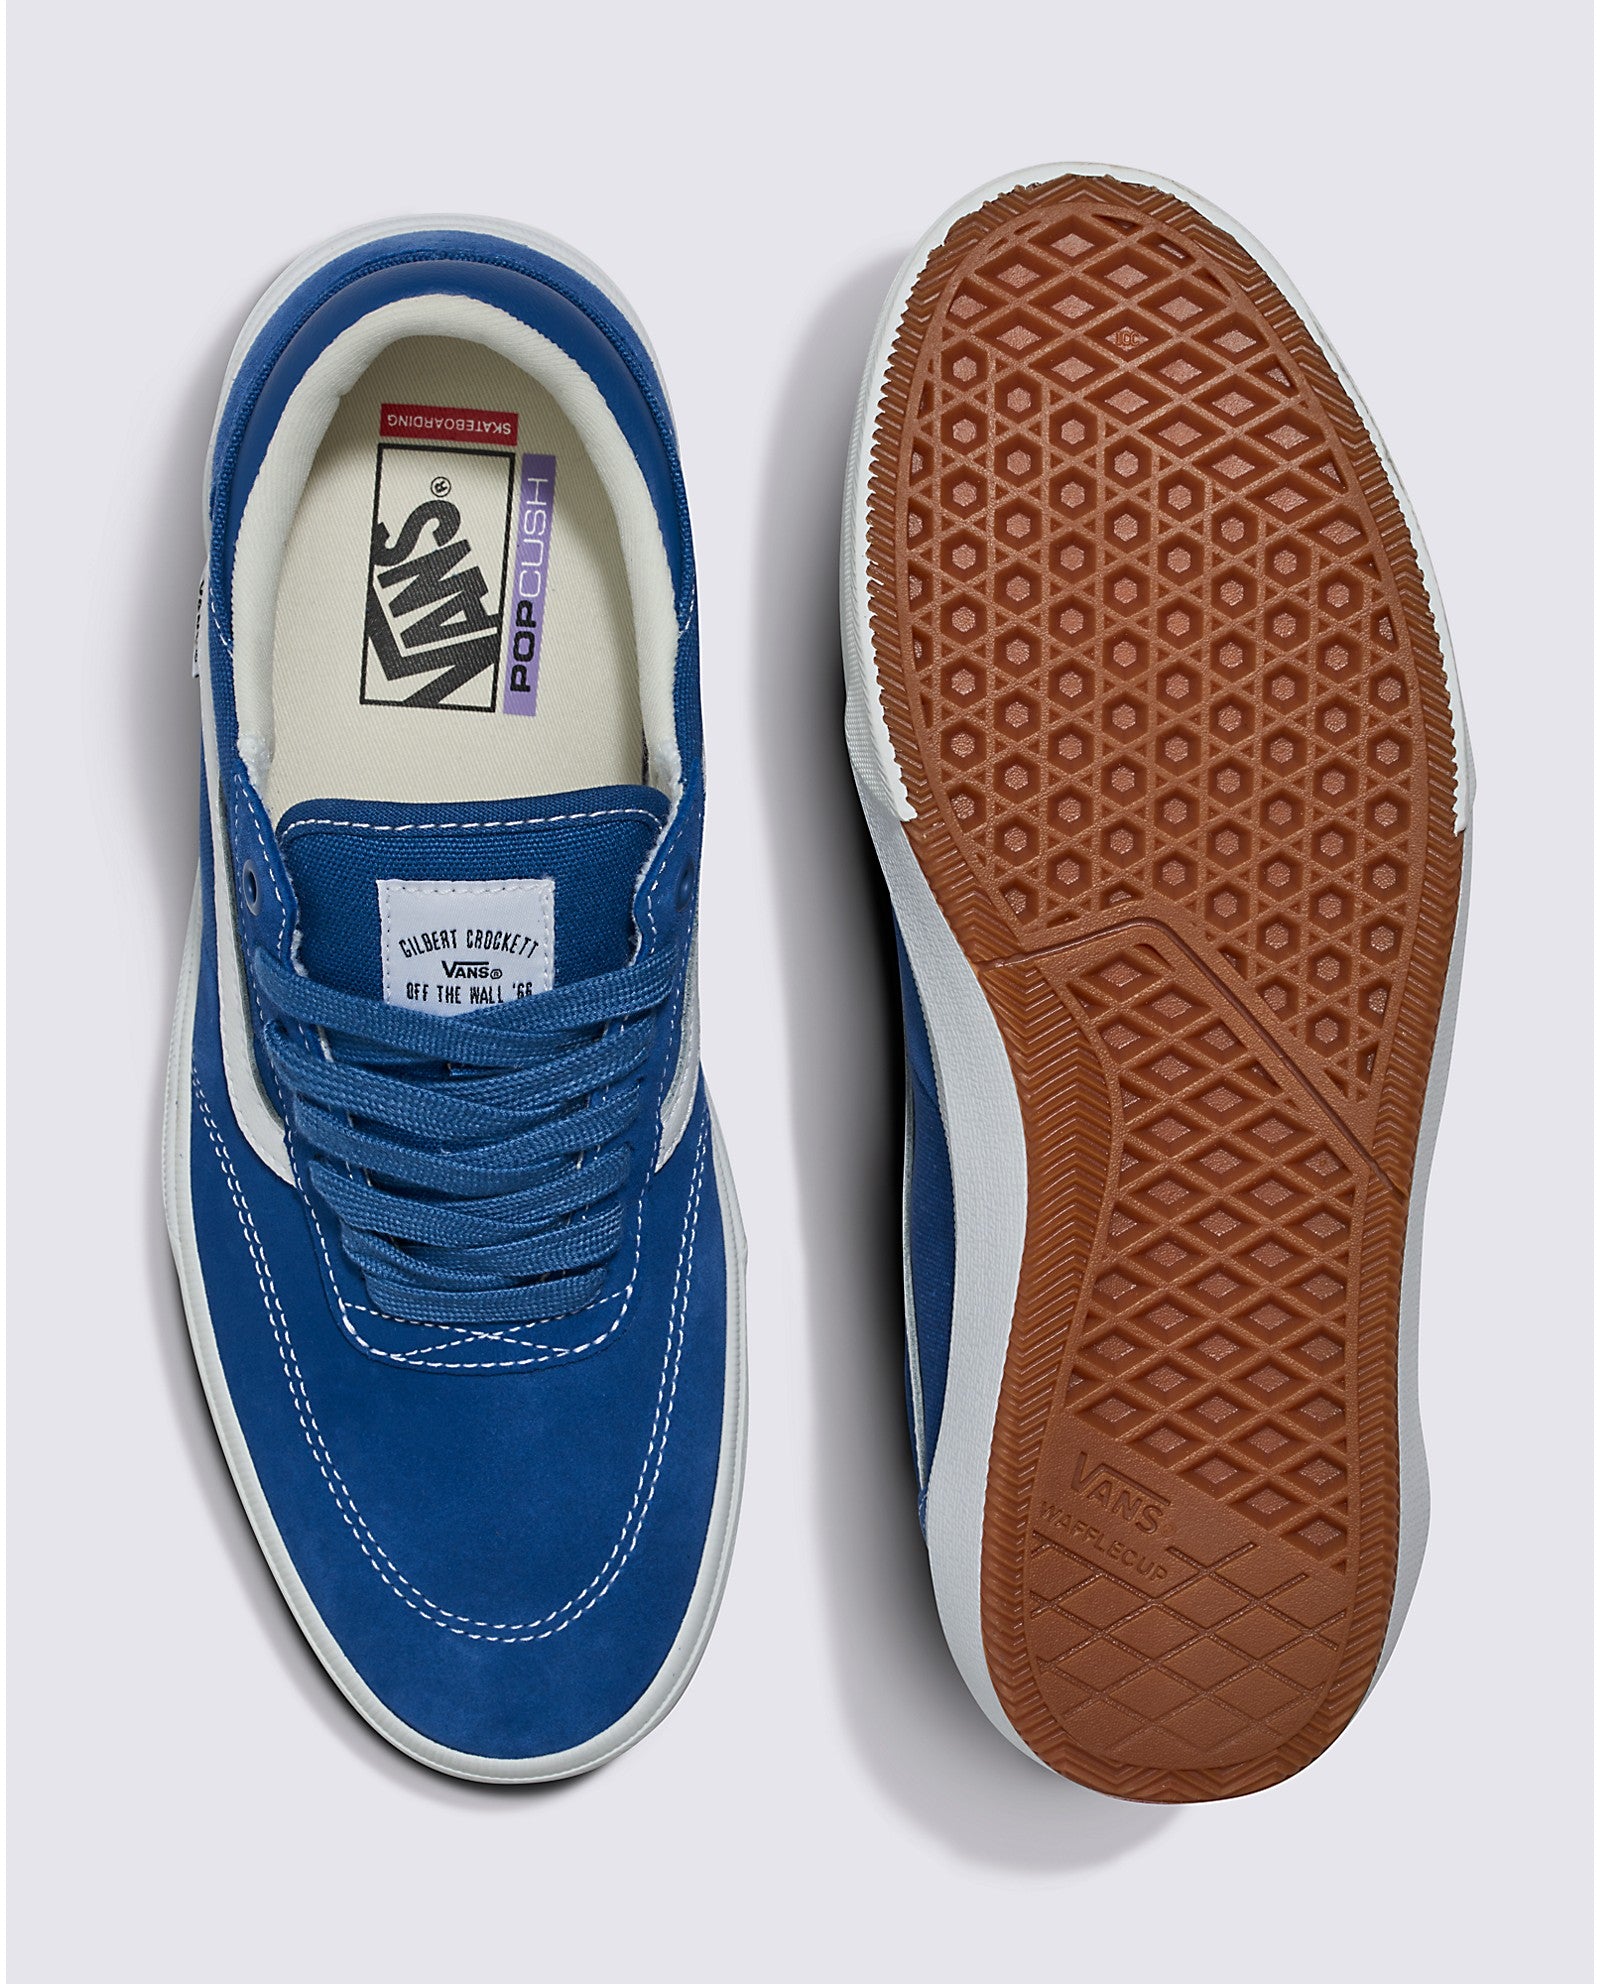 Blue/White Gilbert Crockett Vans Skate Shoe Bottom/Top